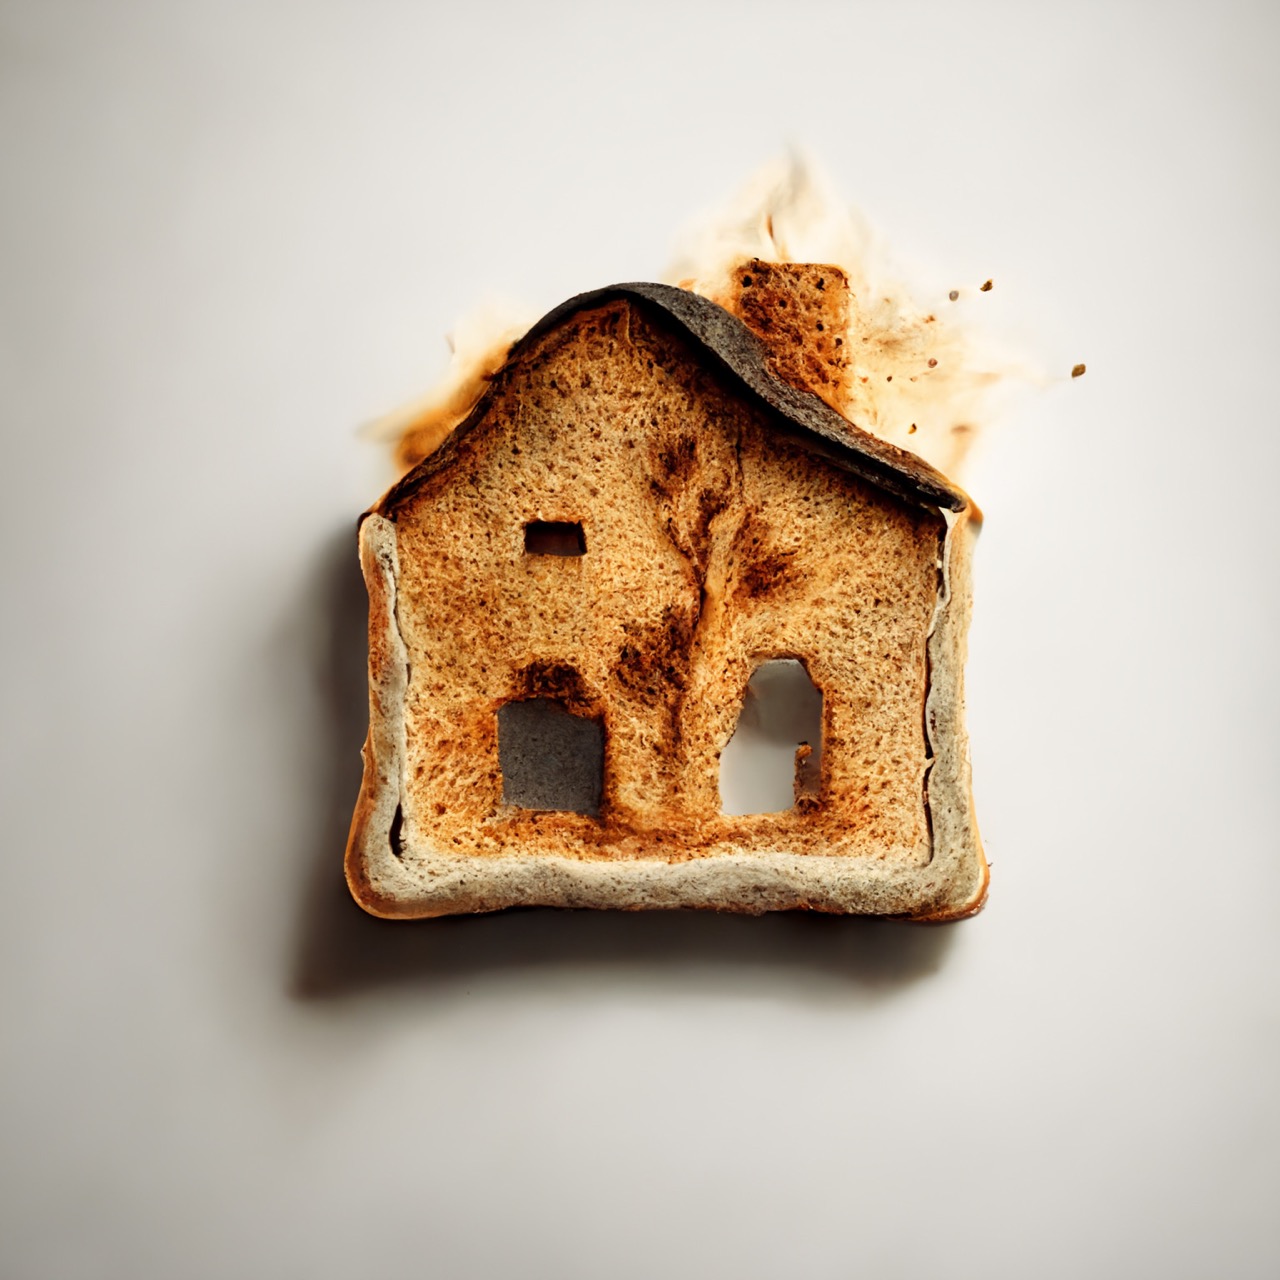 Un morceau de pain grillé avec une maison dessus.